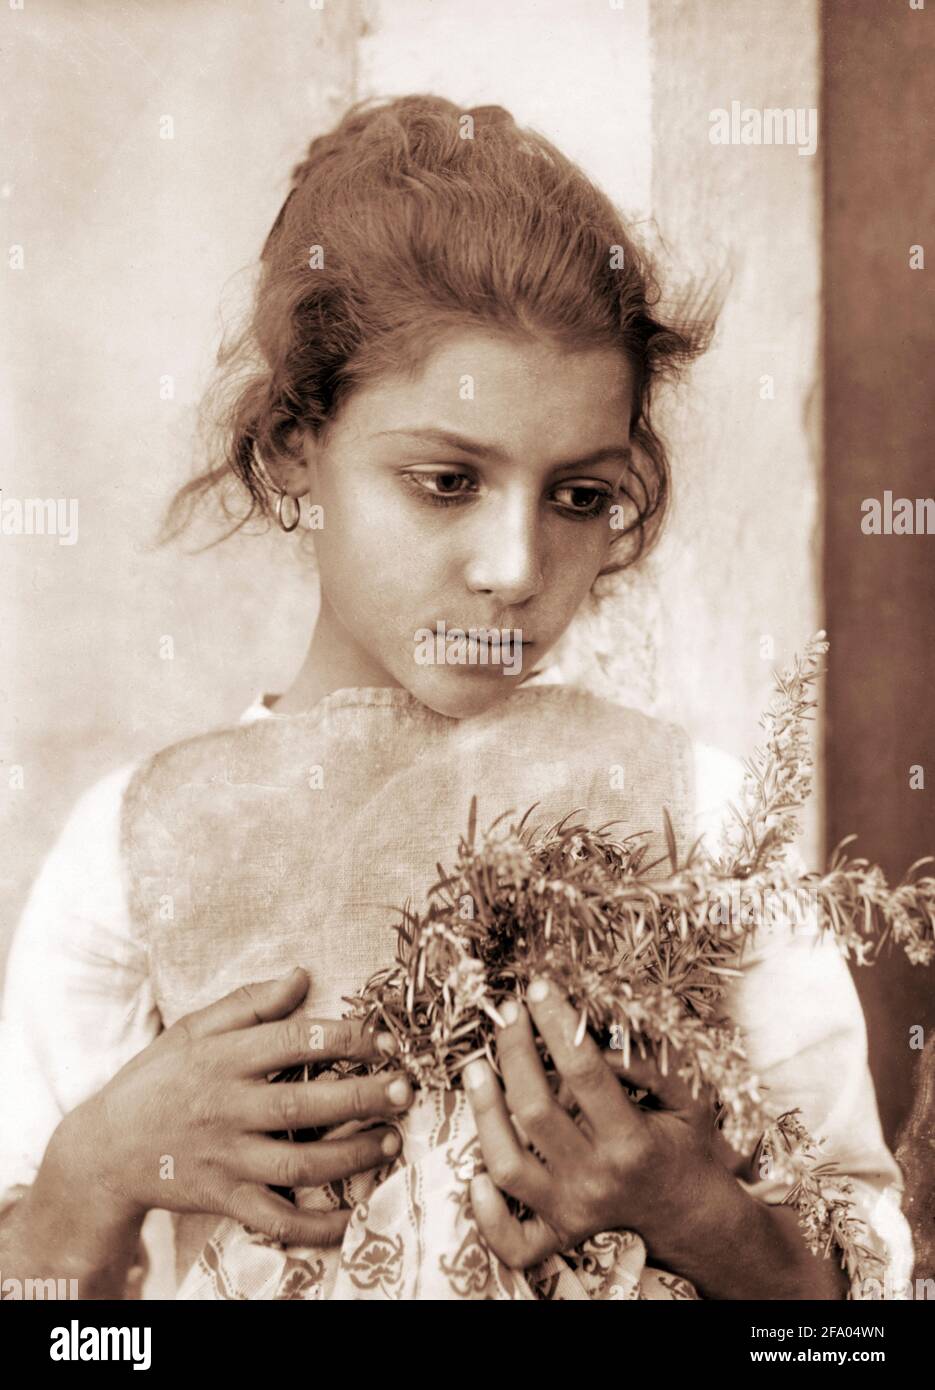 Wilhelm von Gloeden. Fille de Rosemary par le photographe allemand Wilhelm Iwan Friederich August Freiherr von Gloeden (1856-1931), 1905-14 Banque D'Images